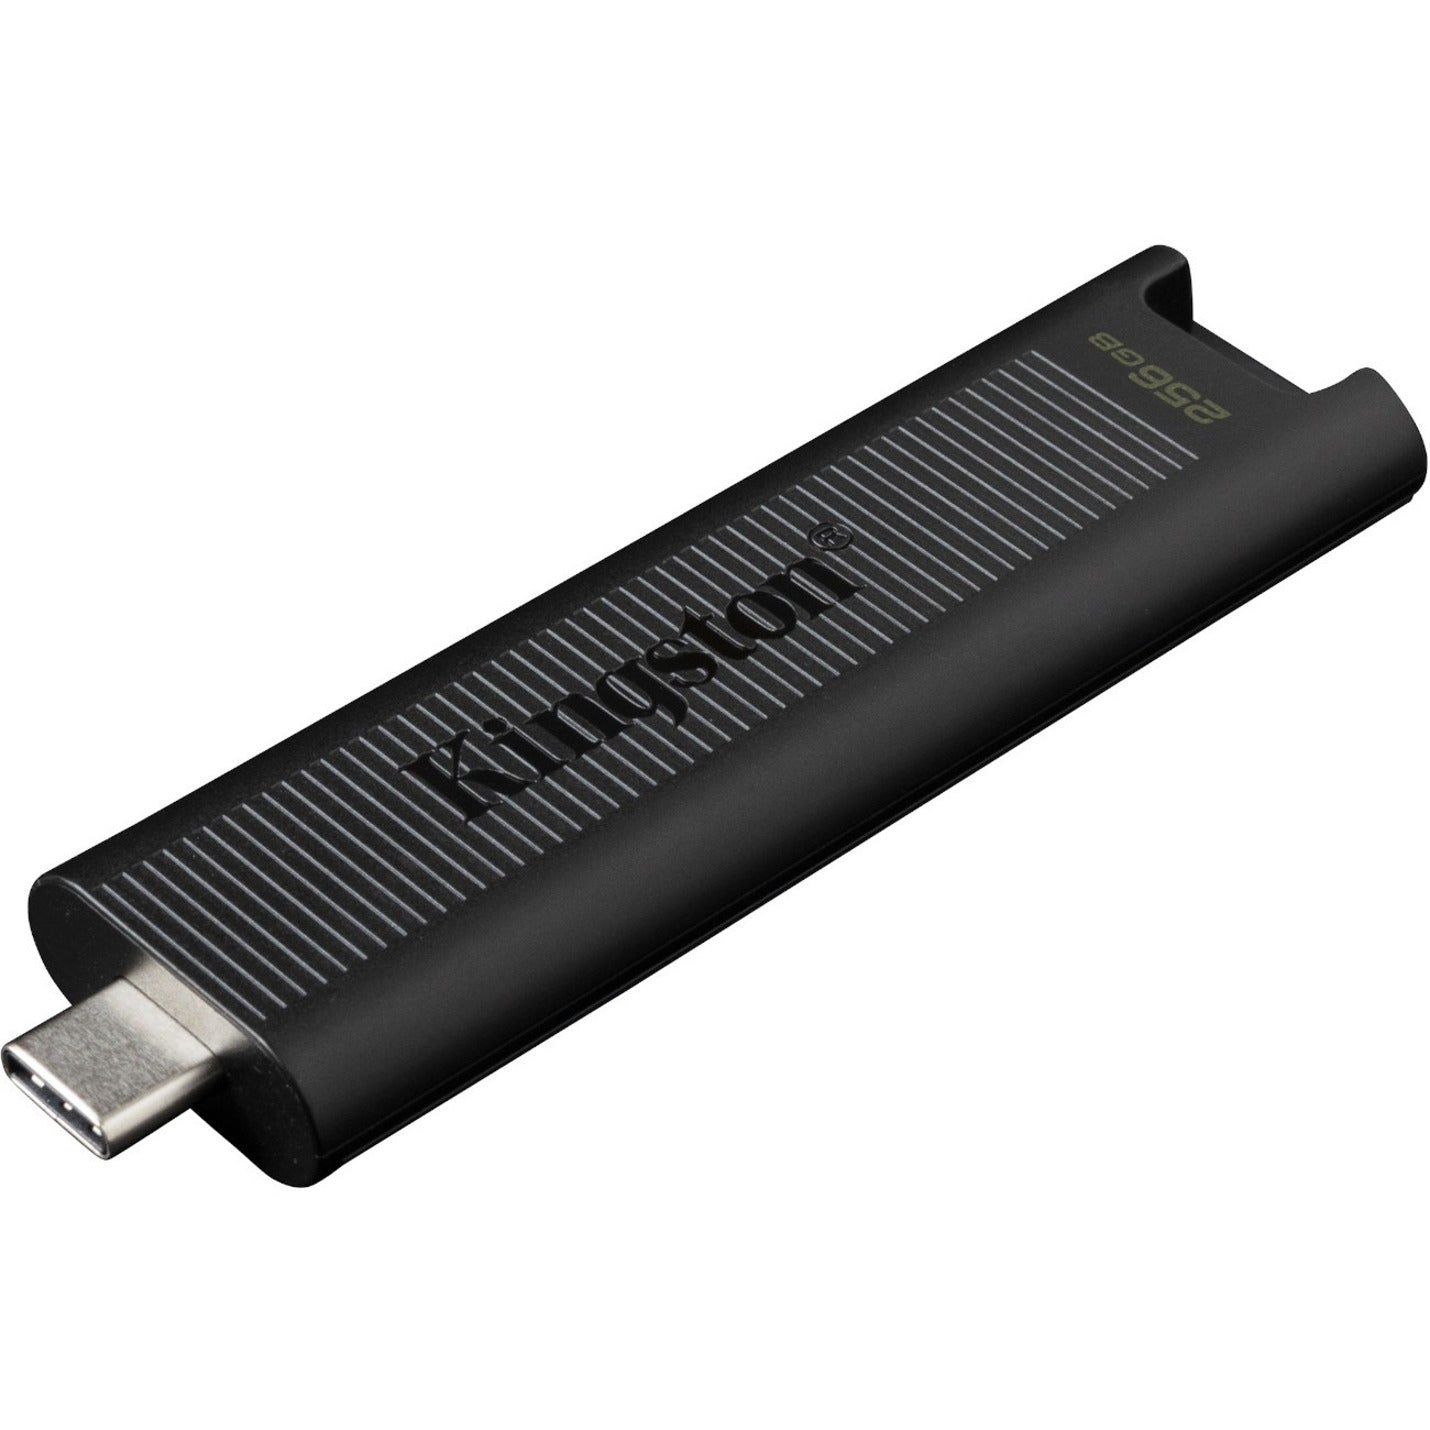 Kingston DTMAX/256GB DataTraveler Max USB 3.2 Gen 2 Flash Drive 256GB Speicher 1000 MB/s Lese Geschwindigkeit 900 MB/s Schreibgeschwindigkeit  